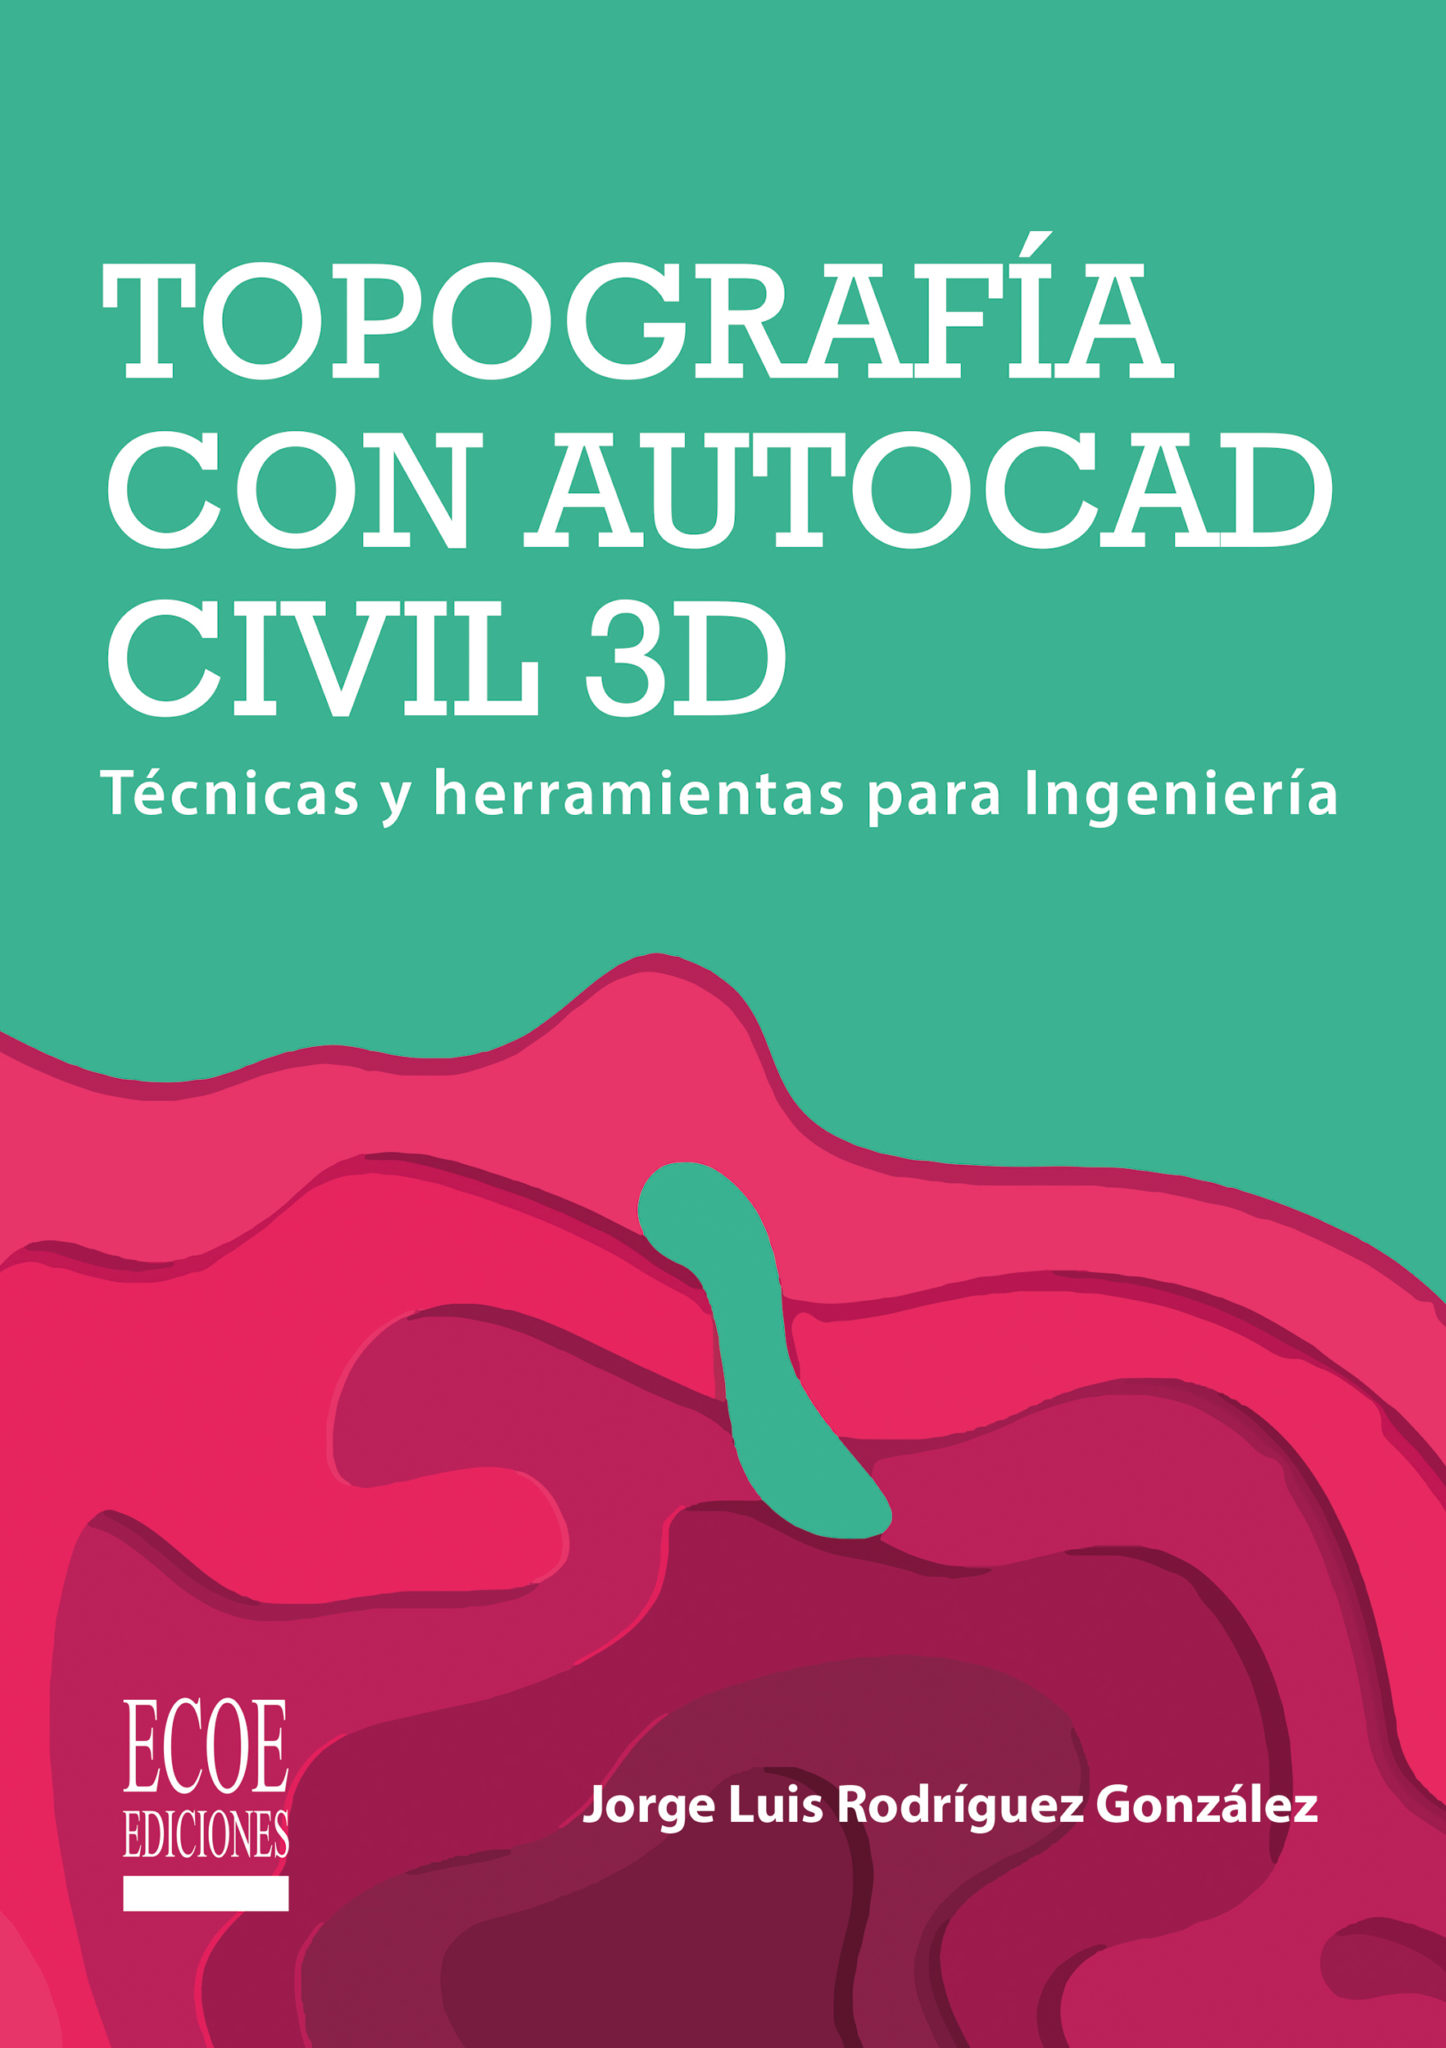 Ebooks De Ingenieria Civil Diseno Geometrico De Vias Con Civil 3d